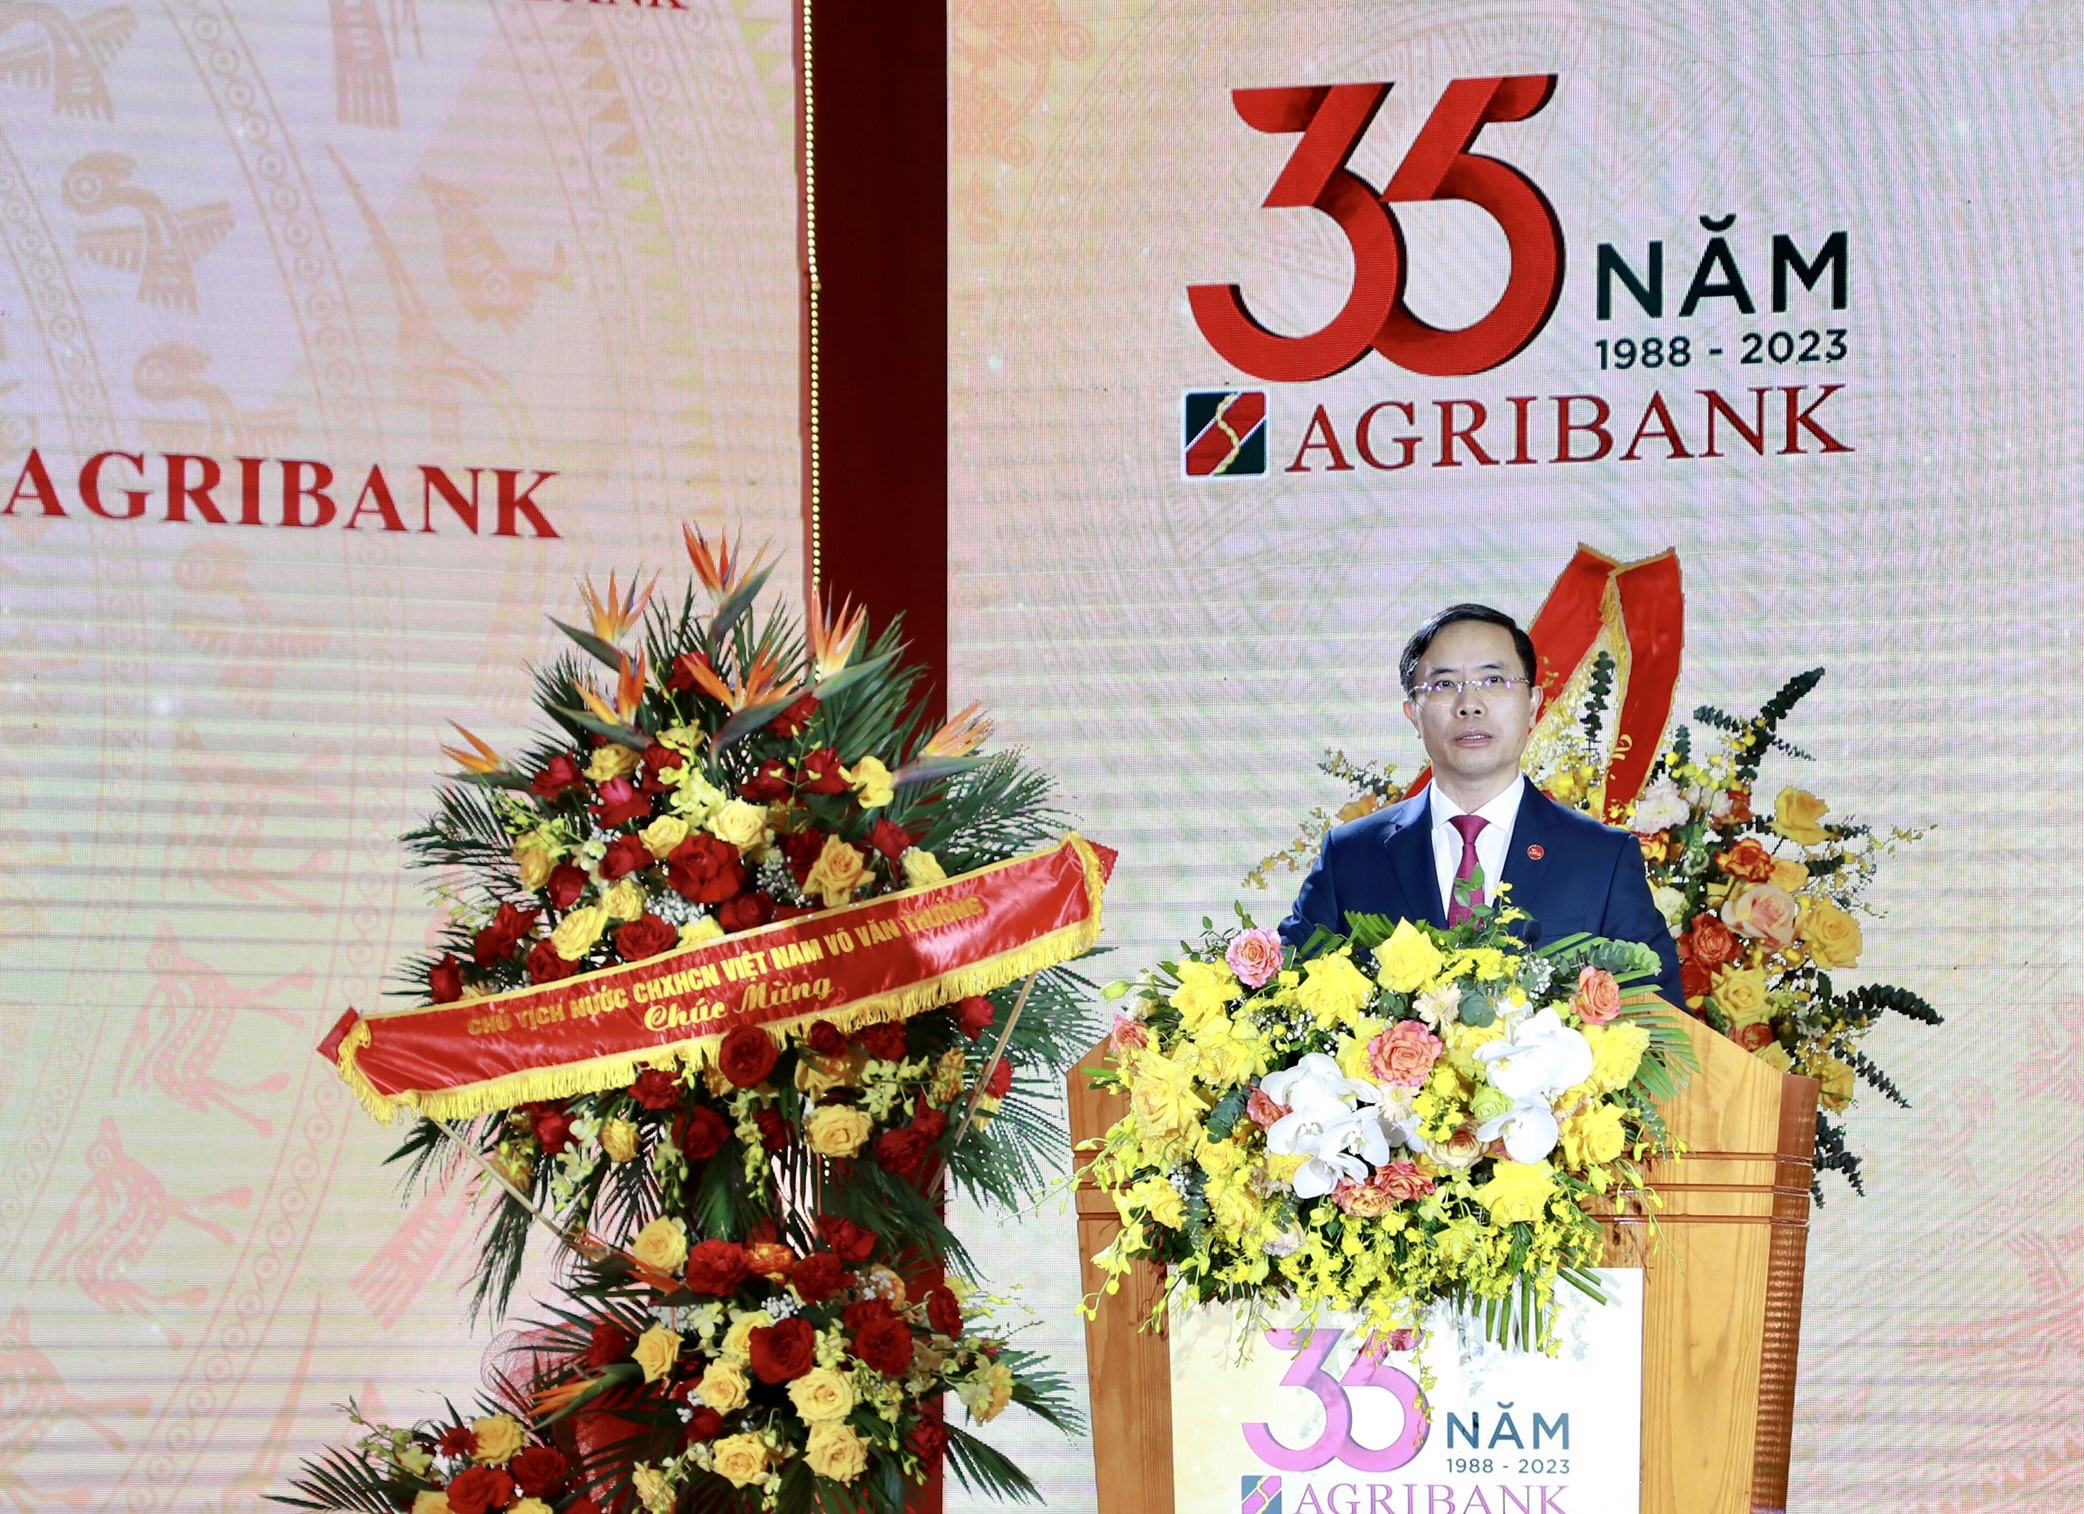 Đồng chí Phạm Đức Ấn - Bí thư Đảng ủy, Chủ tịch HĐTV Agribank phát biểu tại buổi lễ.